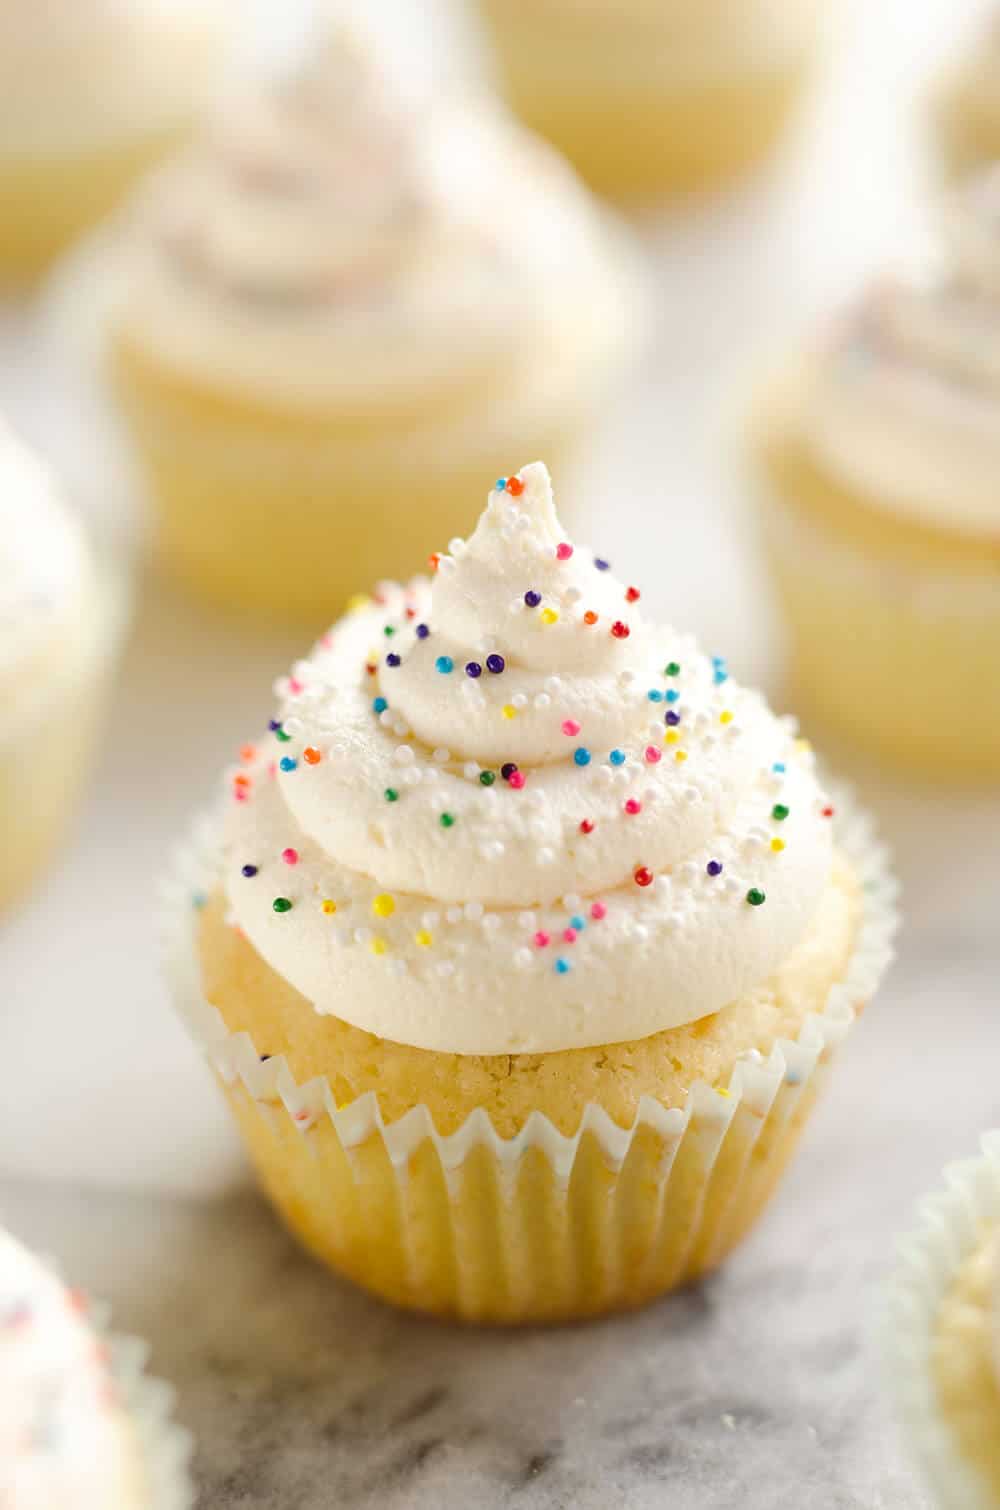 happy birthday cupcakes images